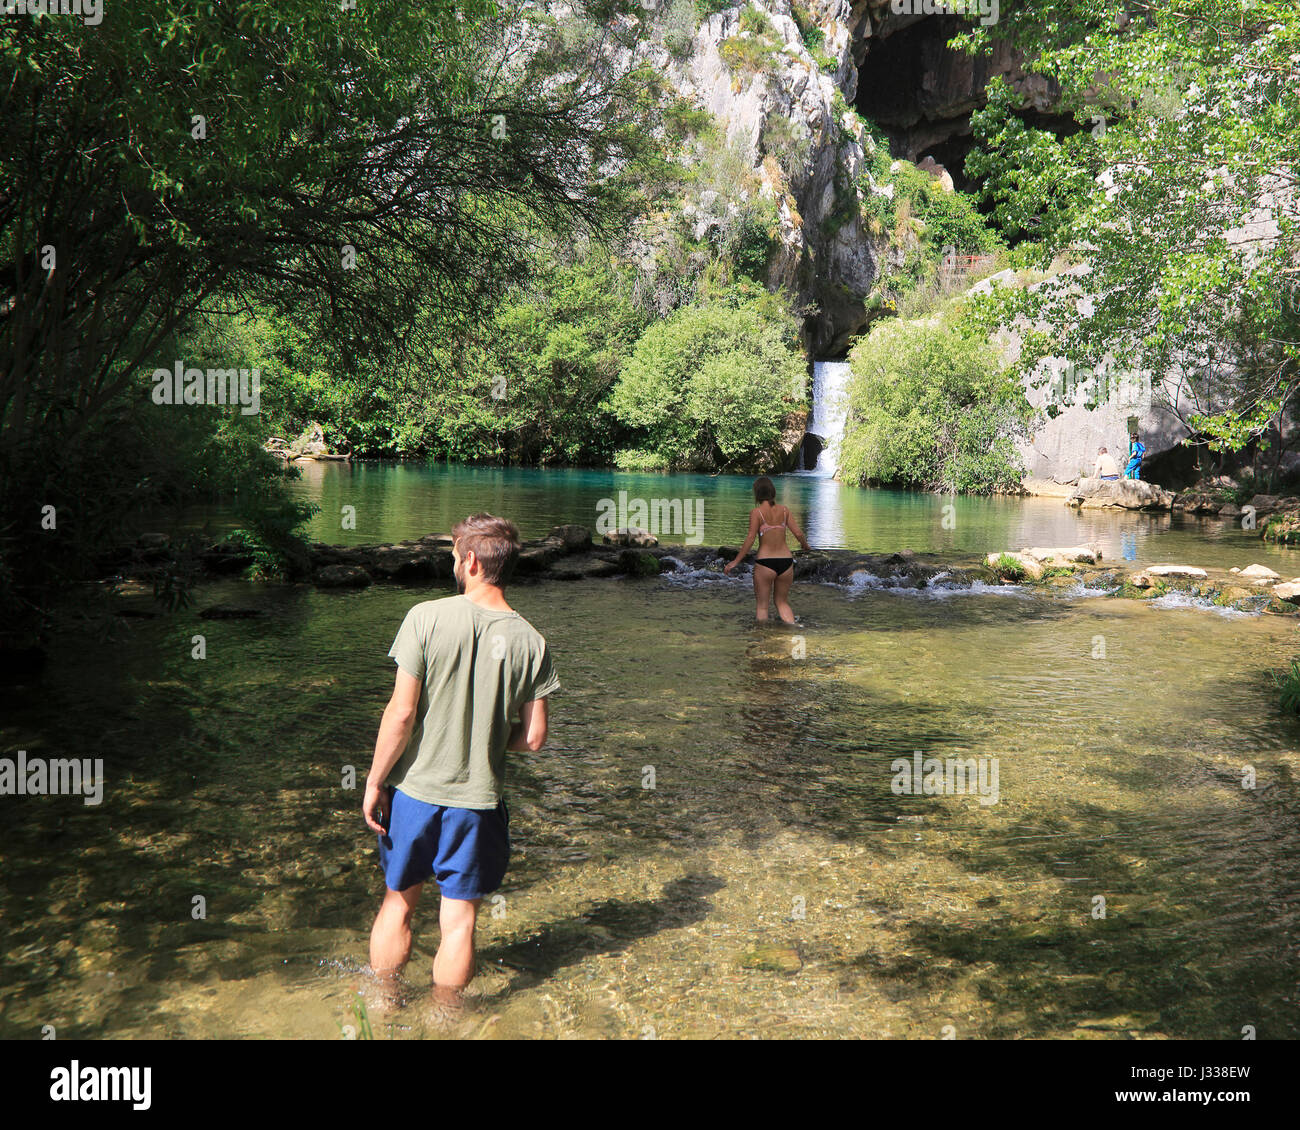 Plunge pool swimming pond, Cueva del Gato, Benaojan, Serrania de Ronda, Malaga province, Spain Stock Photo